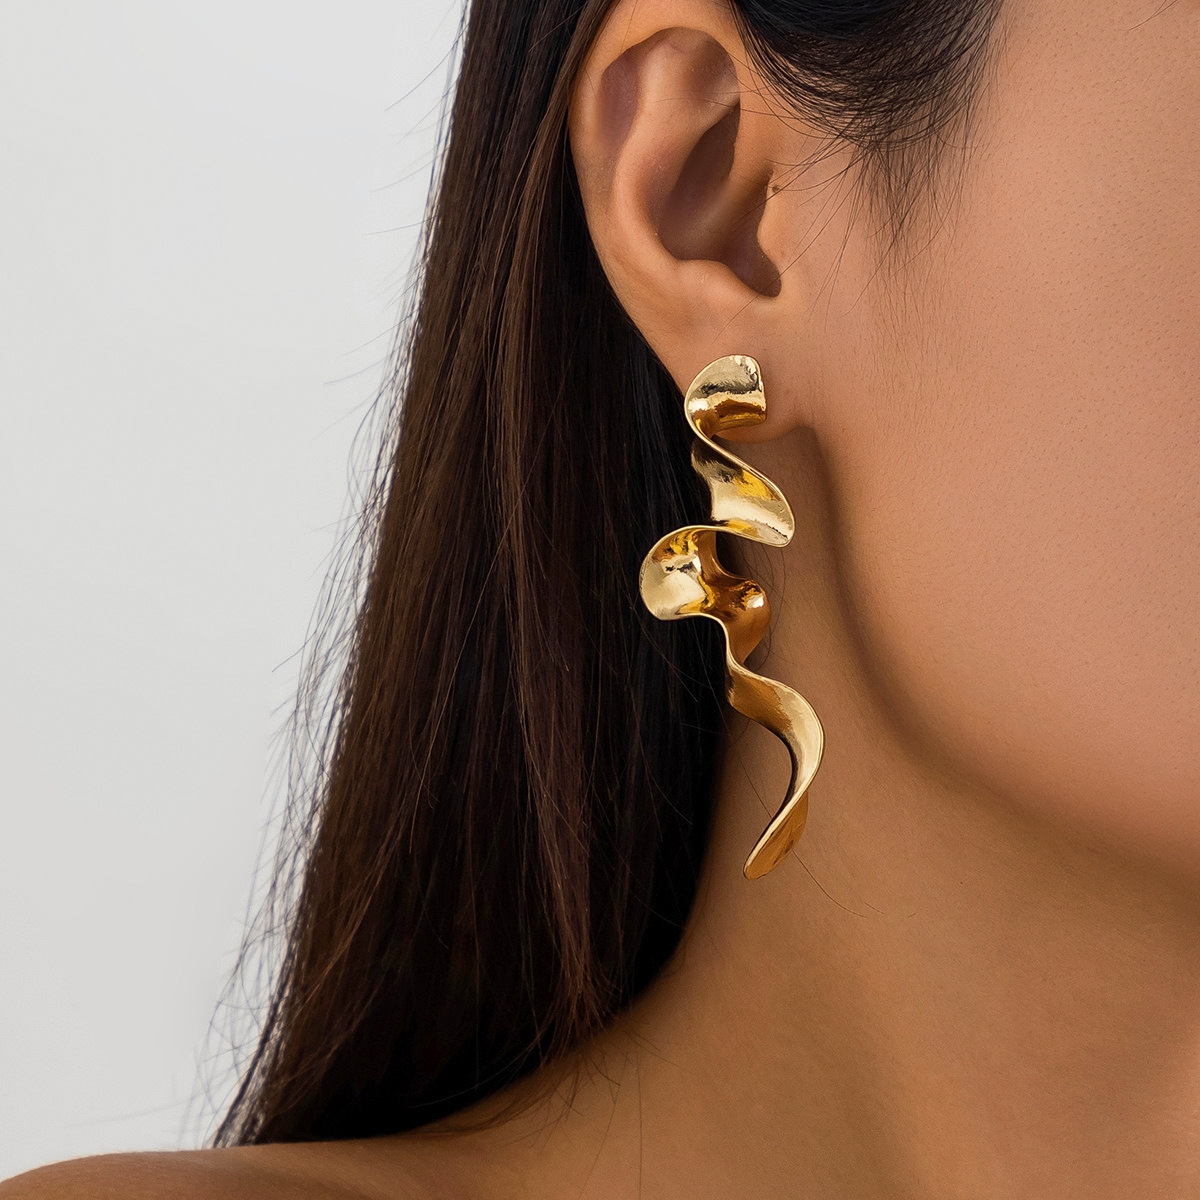 5:Gold earrings